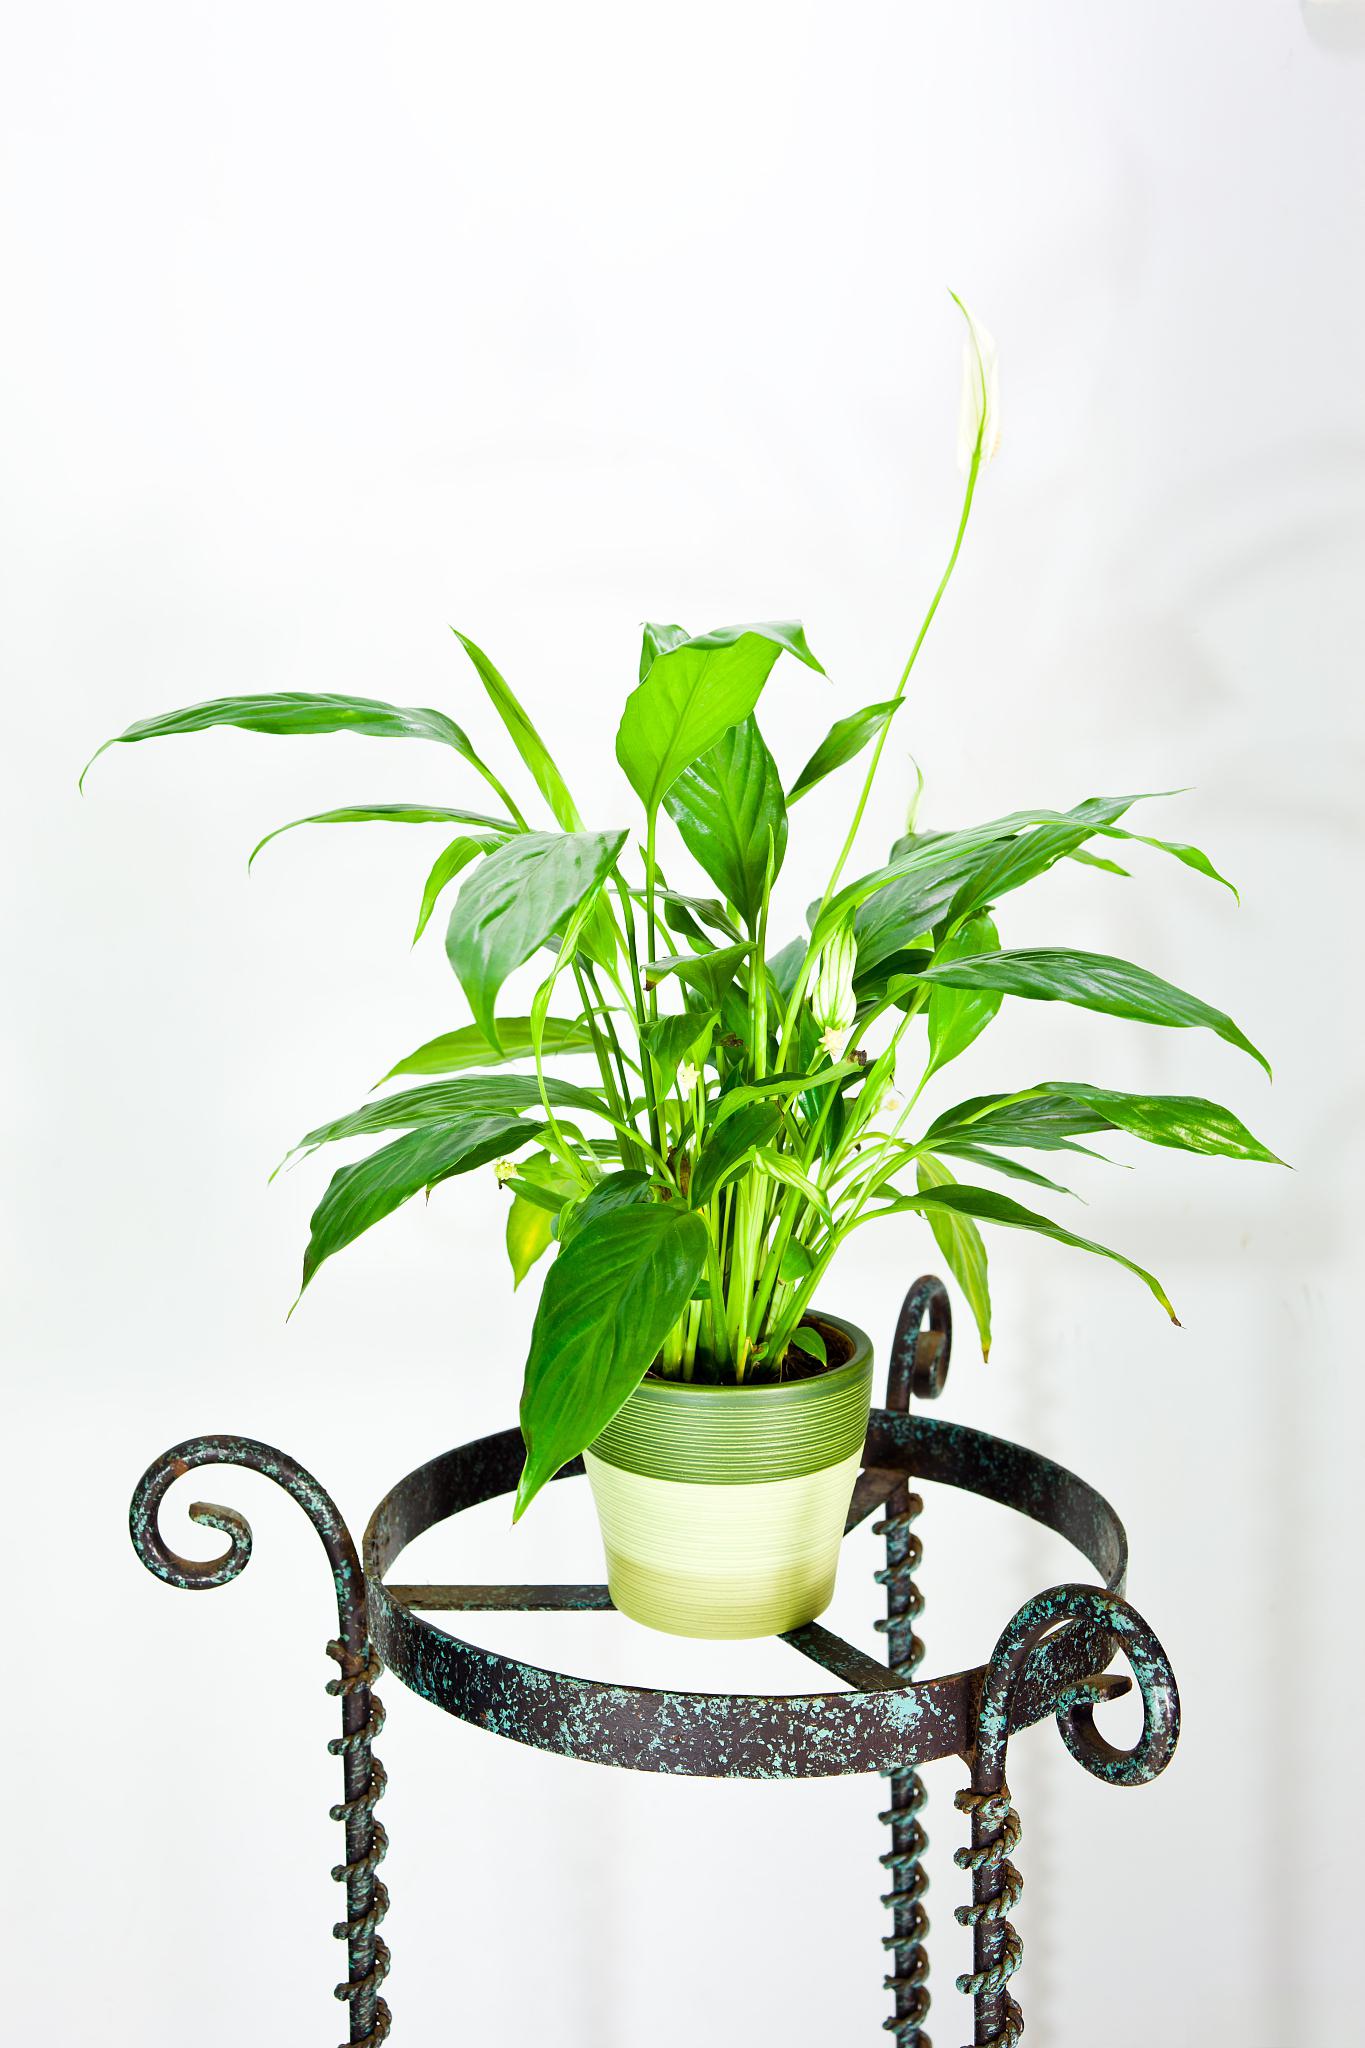 水培吊兰养殖指南 水培吊兰是一种常见且受欢迎的室内植物,其雅致的